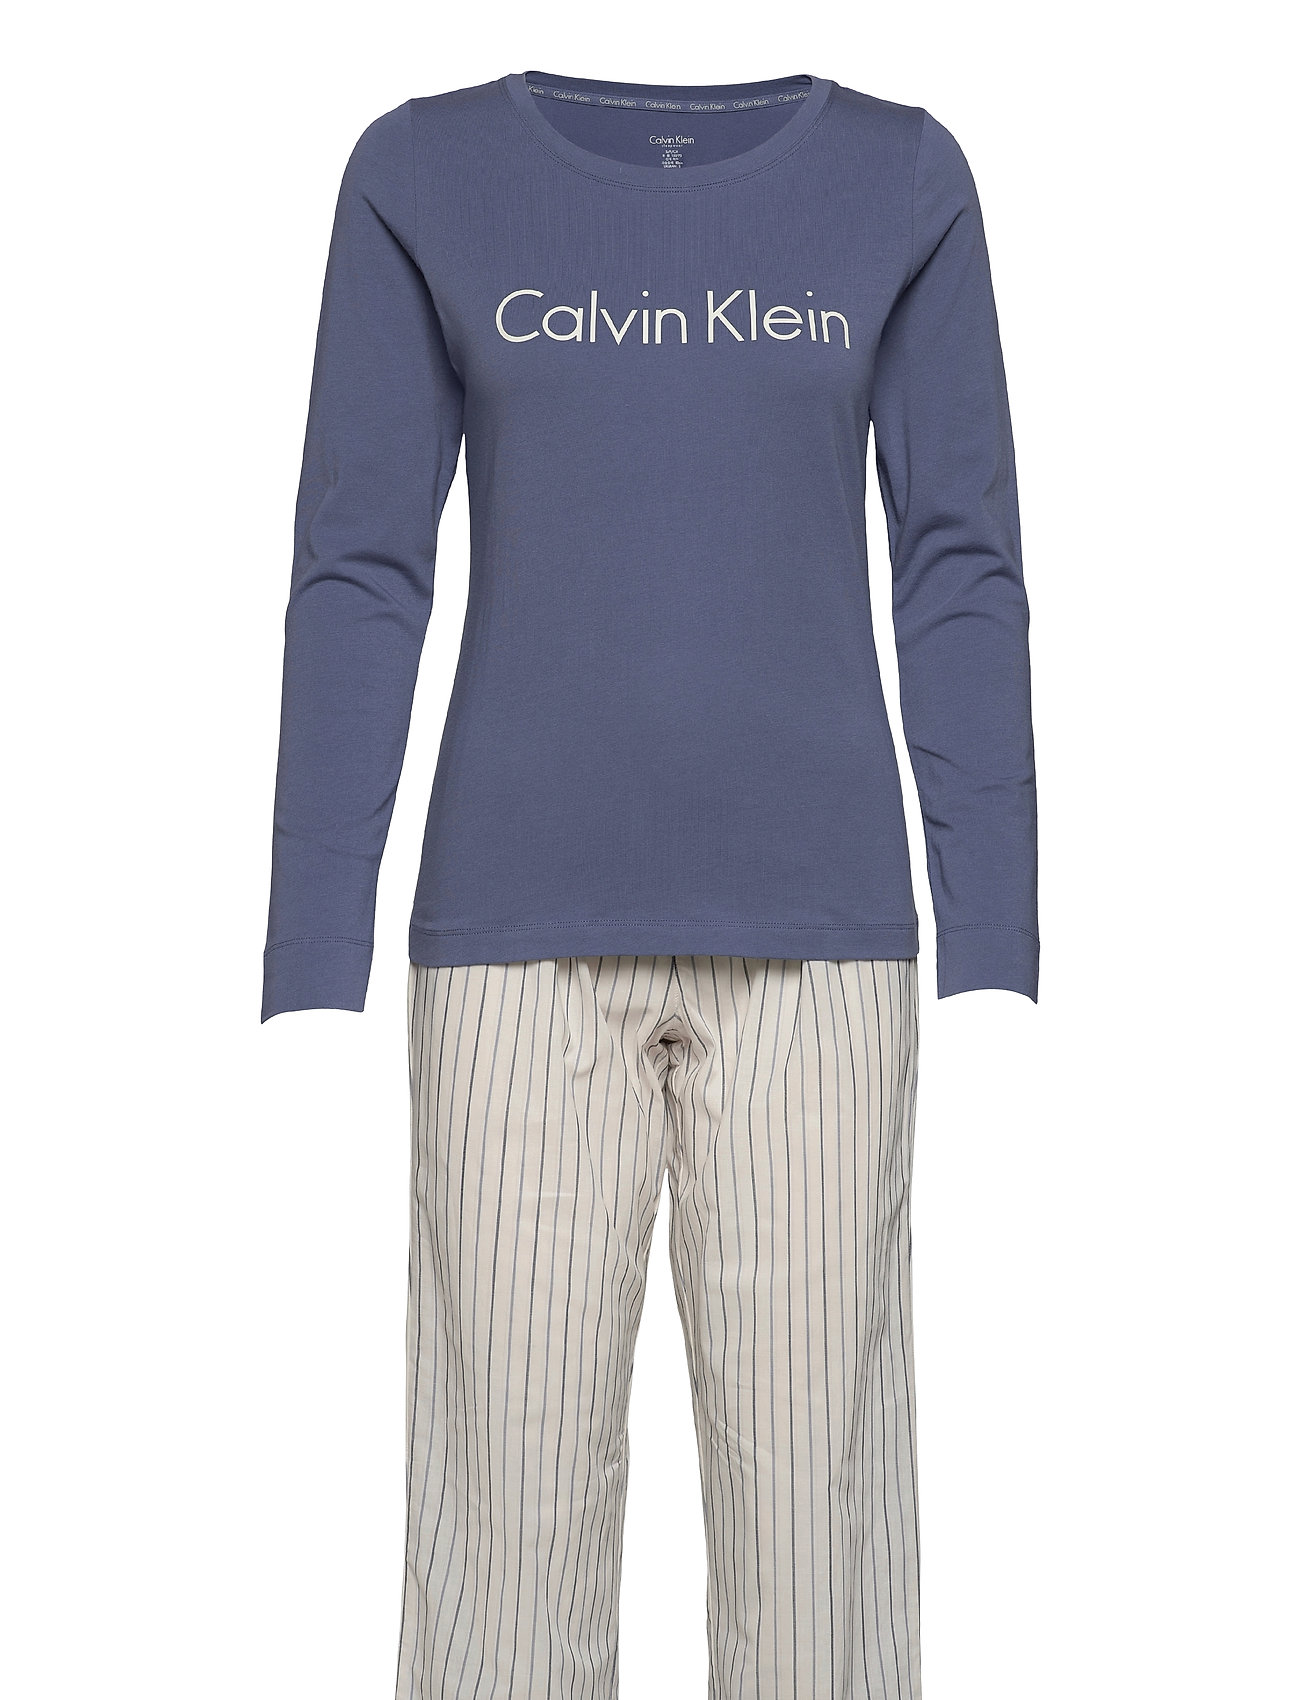 sikkerhed Tilbagekaldelse faktureres FADED VIOLET/ALTERNATING STRIPE Calvin Klein L/S Pant Set Pyjamas Nattøj  Multi/mønstret Calvin Klein pyjamas for dame - Pashion.dk